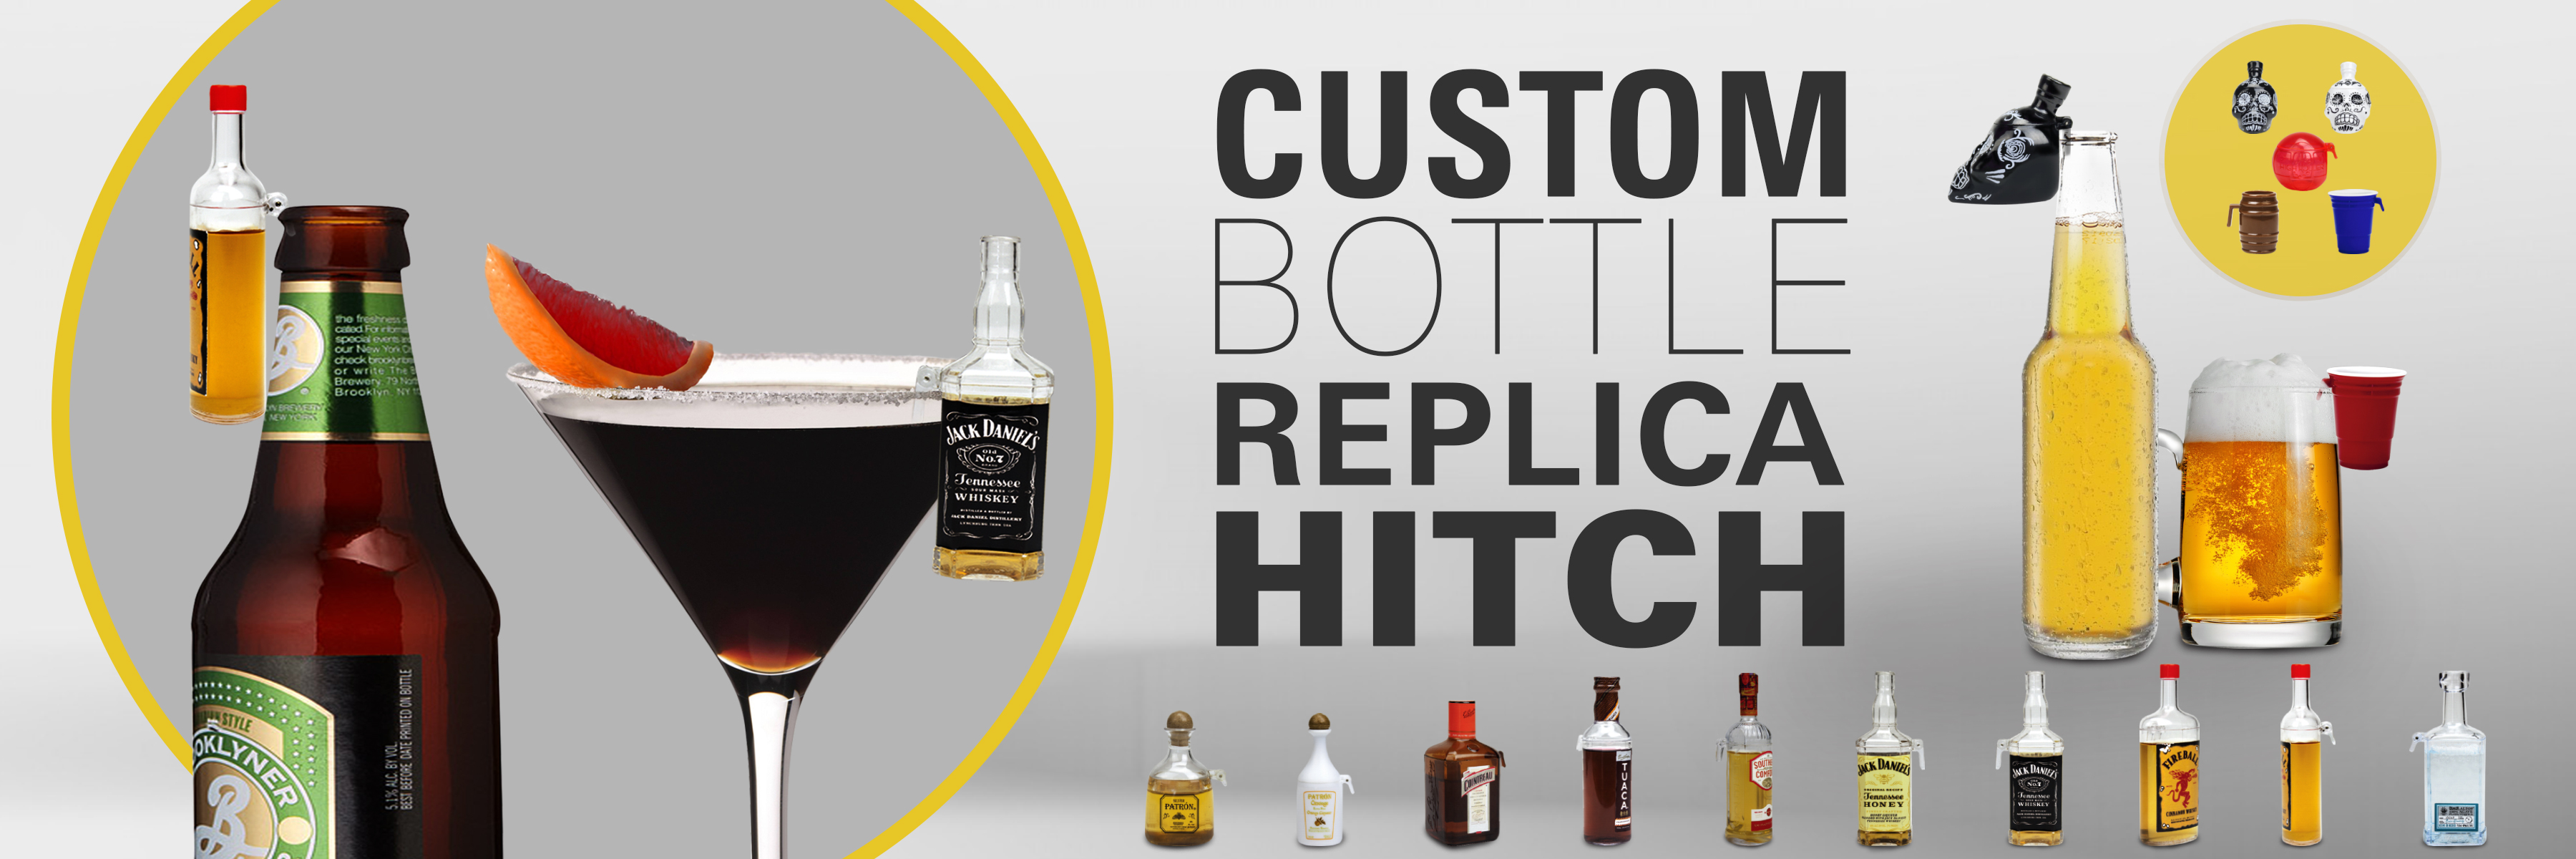 custom bottle replica hitch